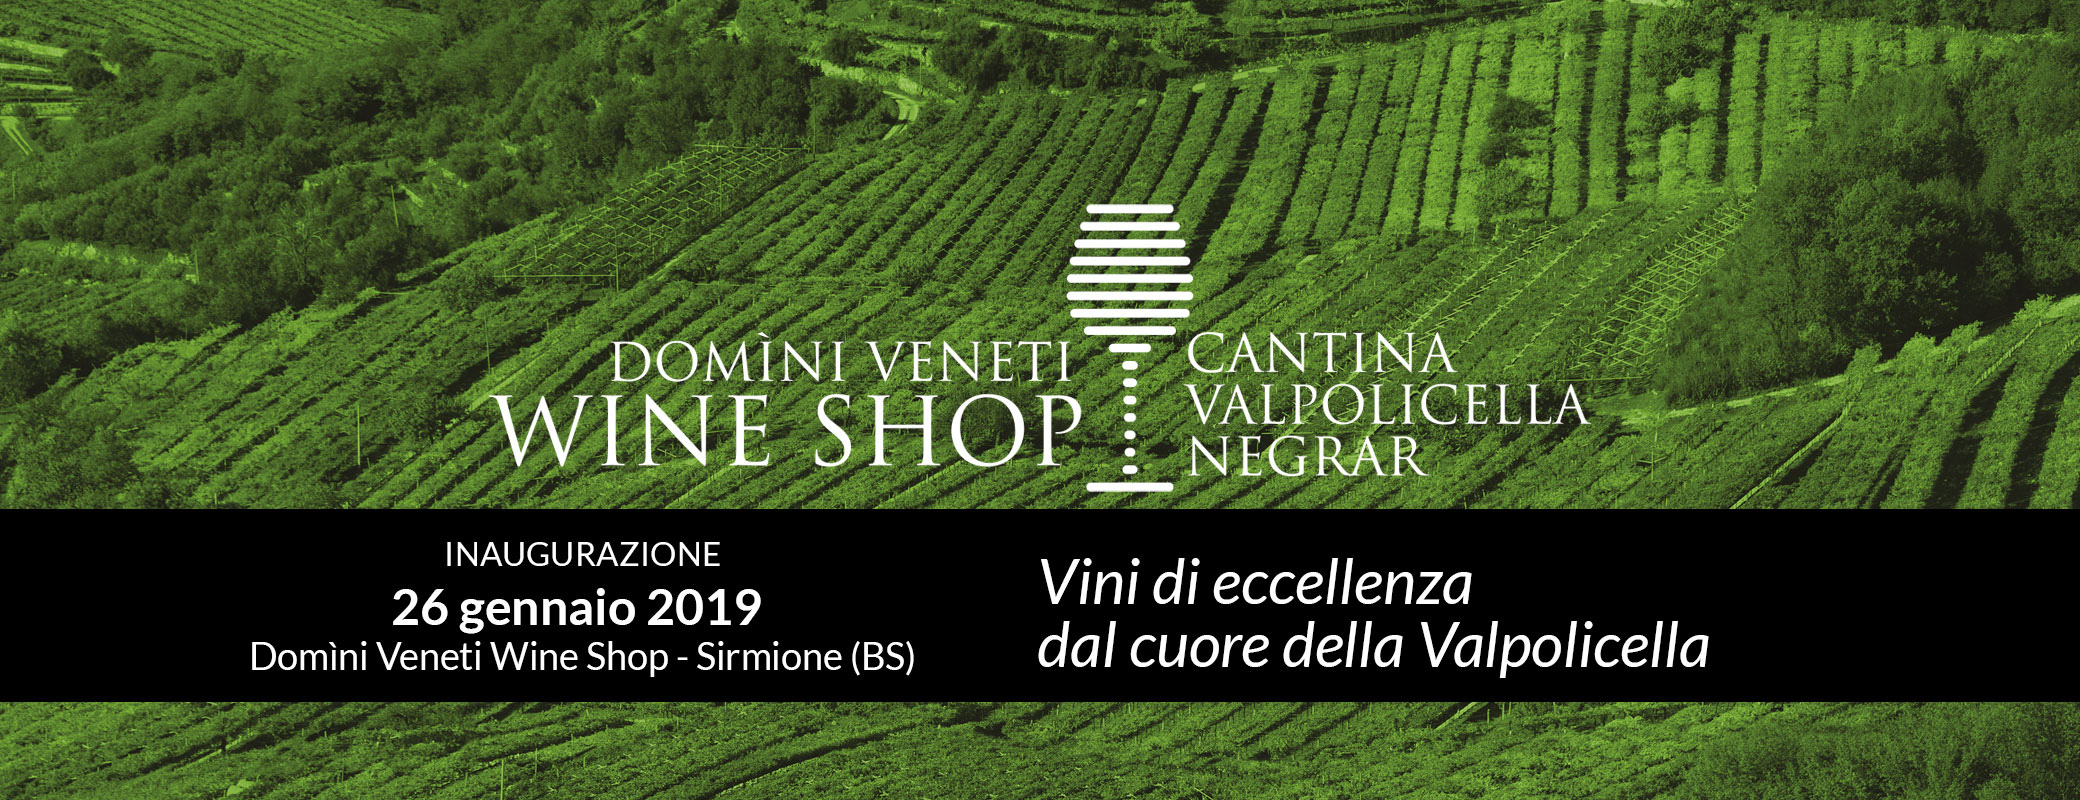 Inaugurazione DOMINI VENETI Wineshop a Sirmione 26.1.2019 - 7